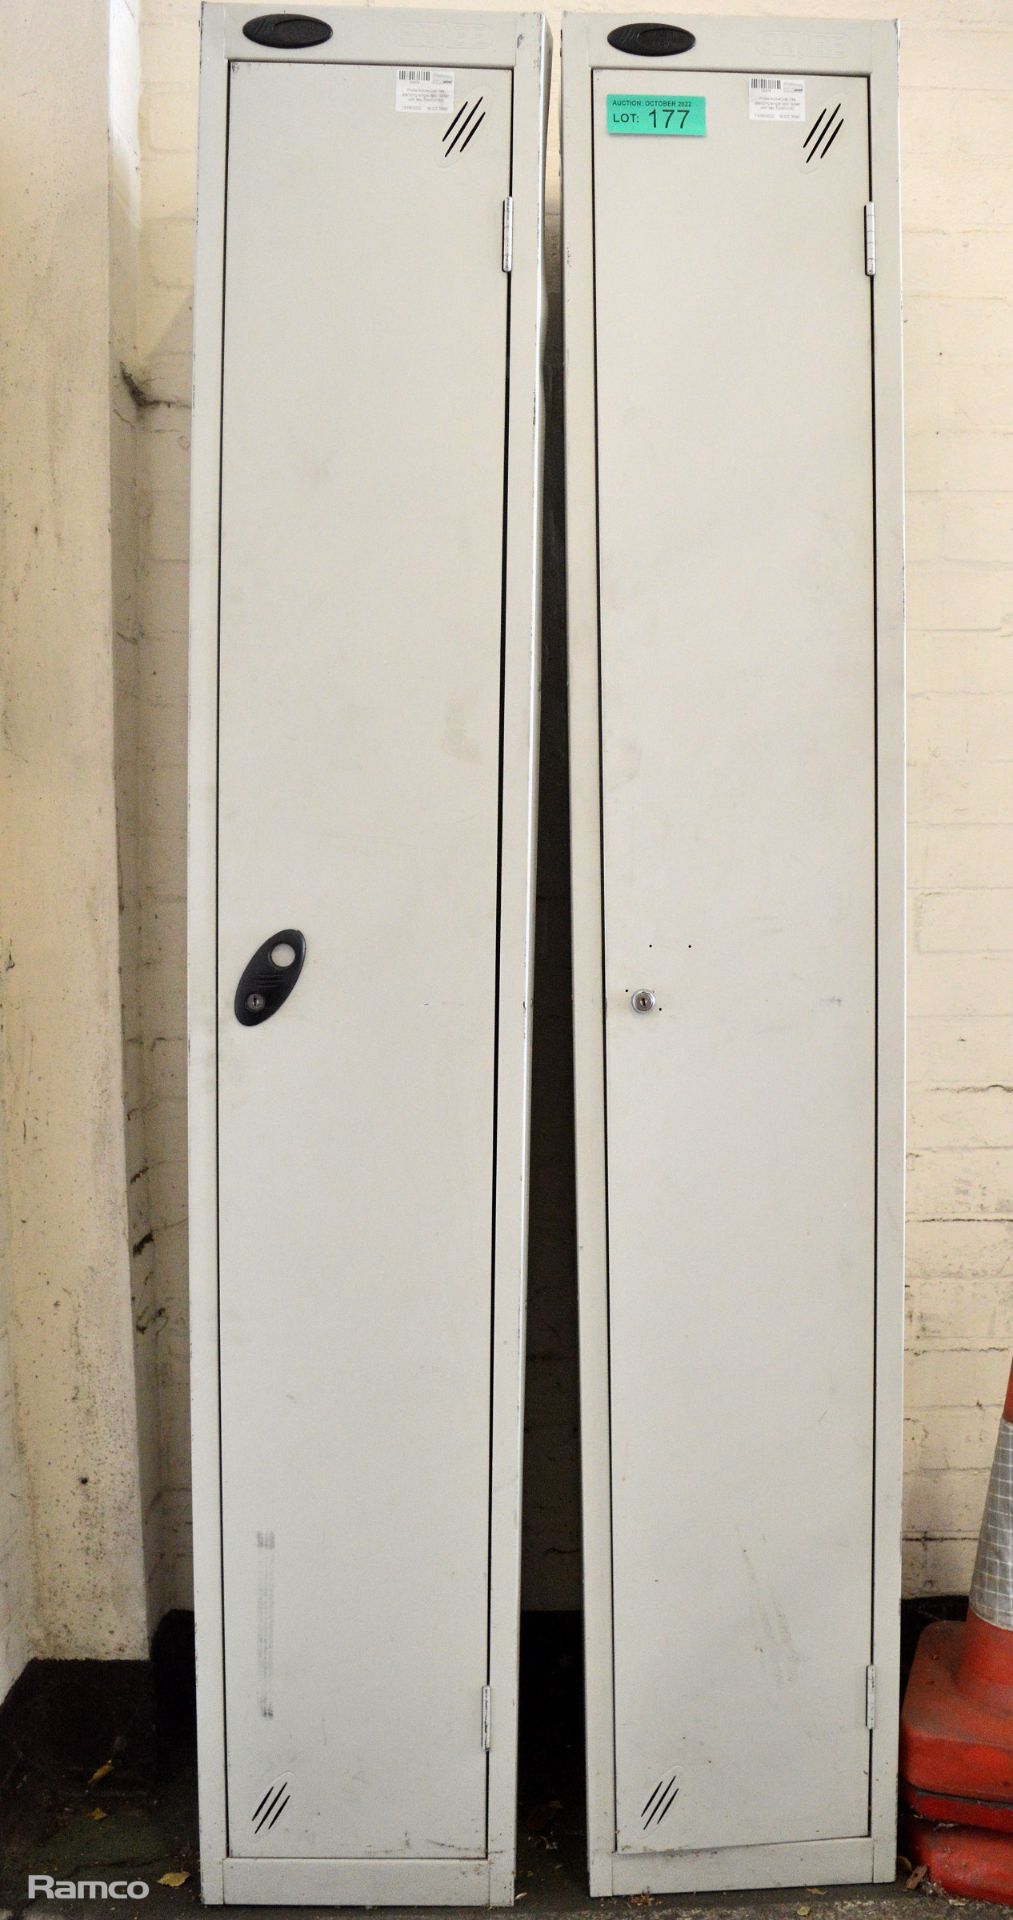 2x Probe Active Coat free standing single door locker - no keys 30x30x180